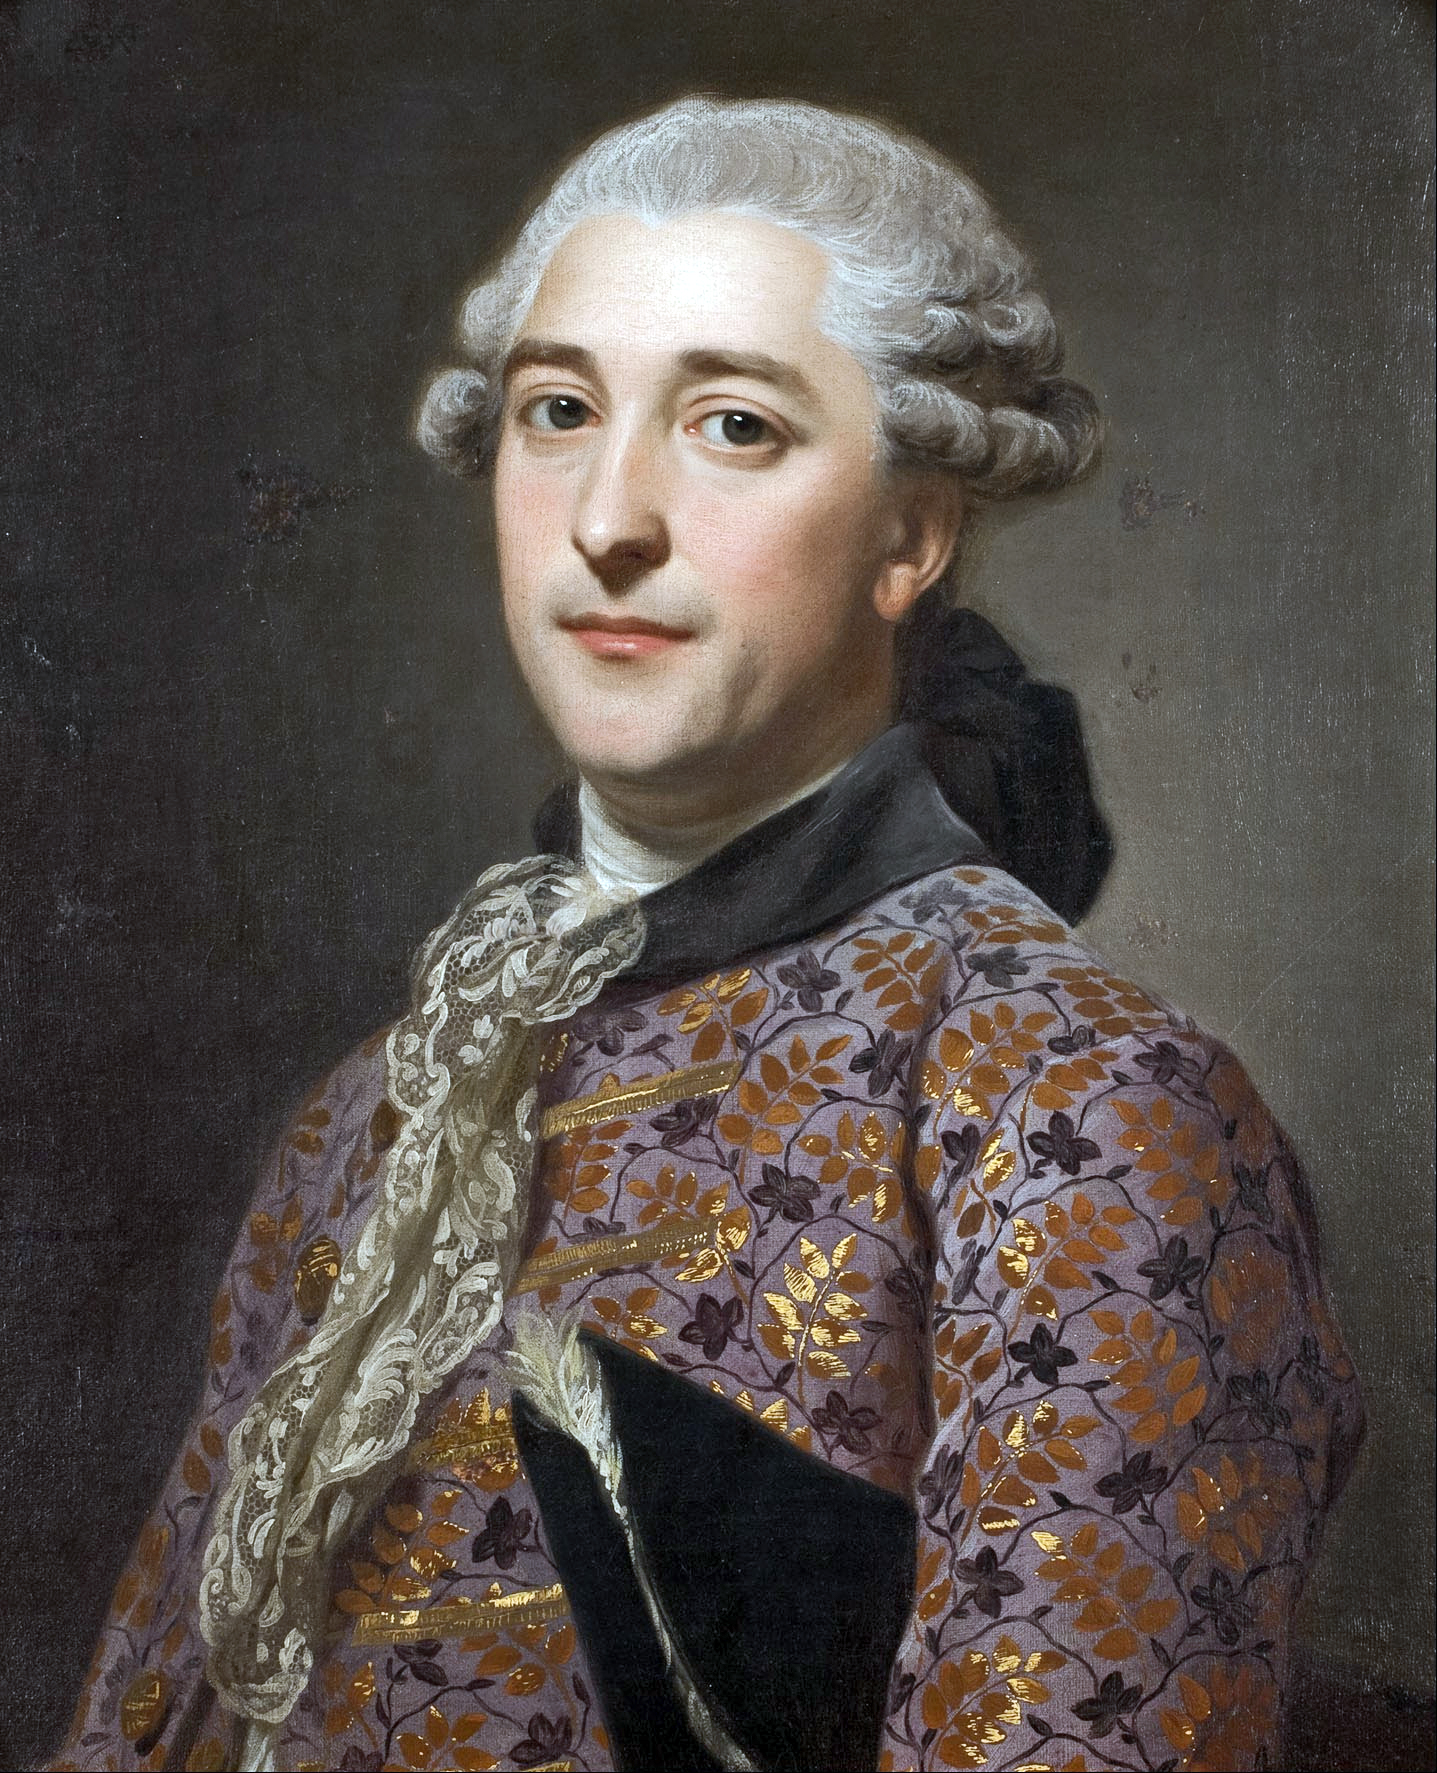 Alexander Roslin - 15 July 1718 - 5 July 1793